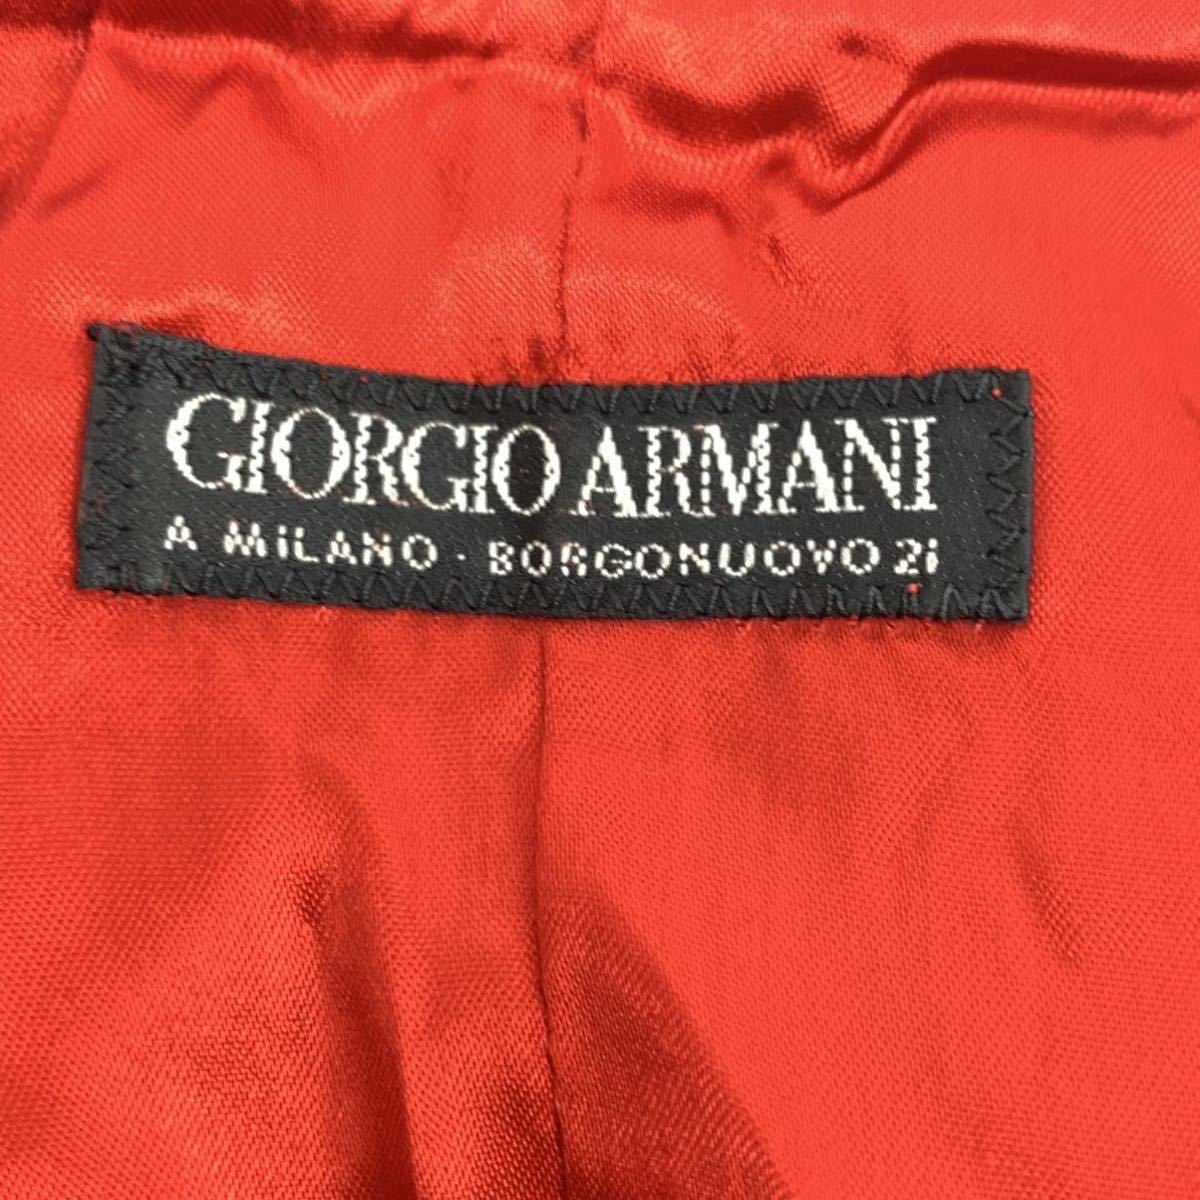 GIORGIO ARMANI ジョルジオアルマーニ ジャケット スエード 長袖 44_画像5